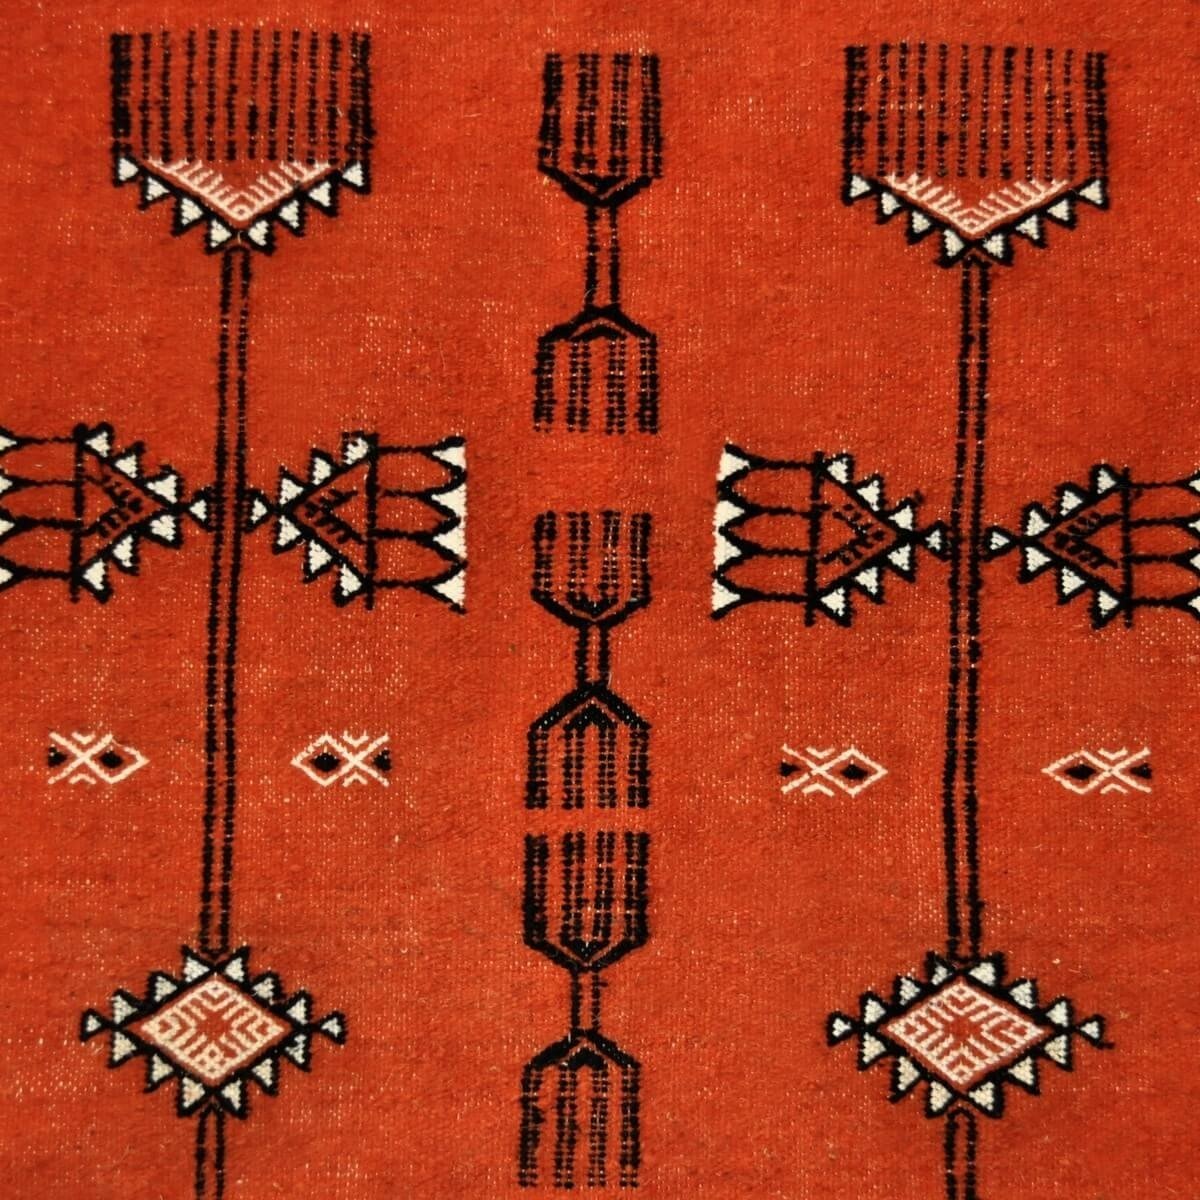 Berber tapijt Tapijt Kilim Azumar 95x170 Oranje/Zwart (Handgeweven, Wol, Tunesië) Tunesisch kilimdeken, Marokkaanse stijl. Recht